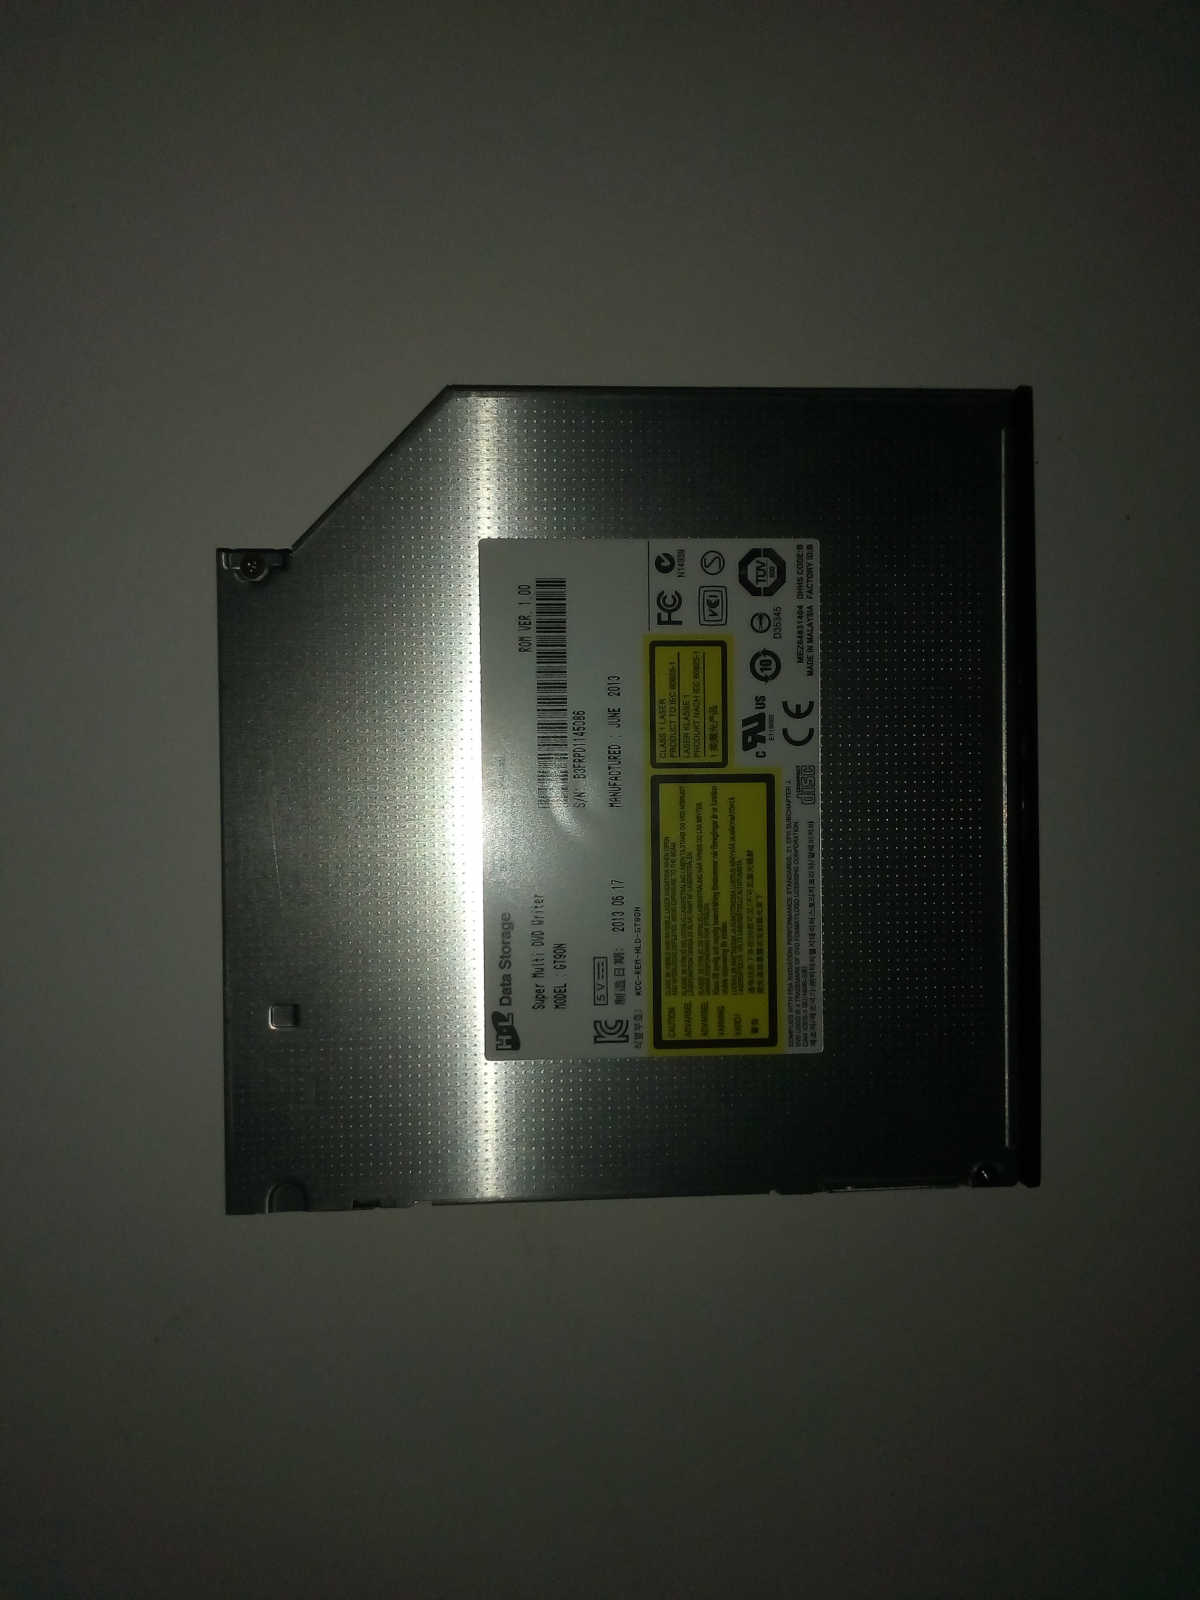 GT90N HL lecteur graveur DVD SATA, Garantie 2 ans ! Retour produit étendu à 30 jours, livraison forfaitaire. Pour MSI MS-AC15 notamment